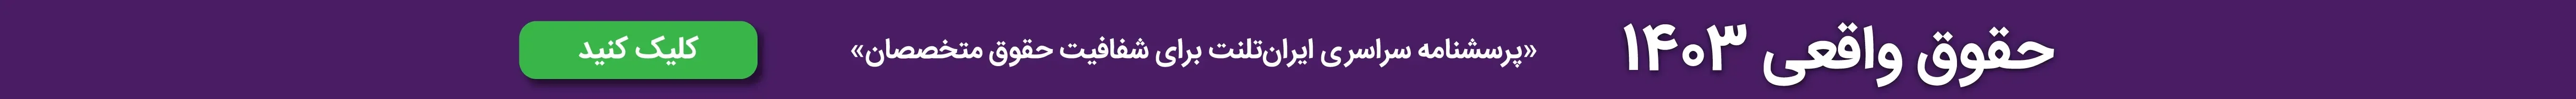 حقوق واقعی 1403
پرسشنامه سراسری ایران تلنت برای شفافیت حقوق متخصصان